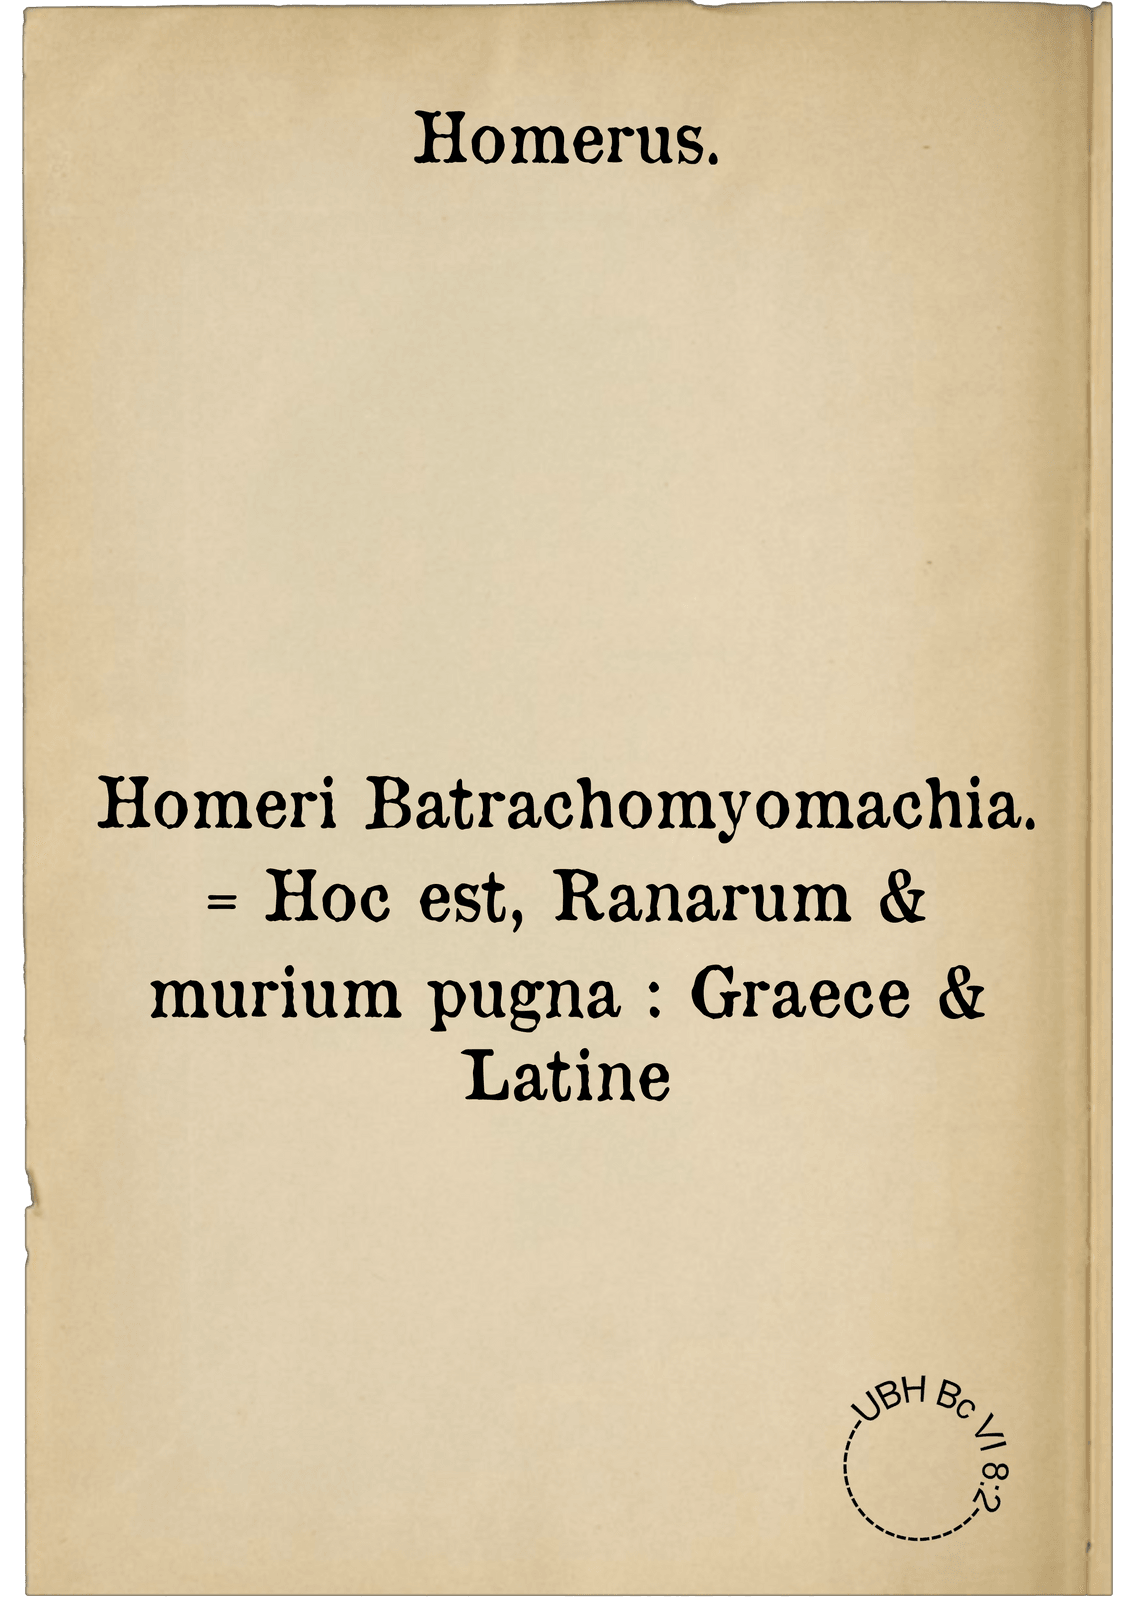 Homeri Batrachomyomachia. = Hoc est, Ranarum & murium pugna : Graece & Latine